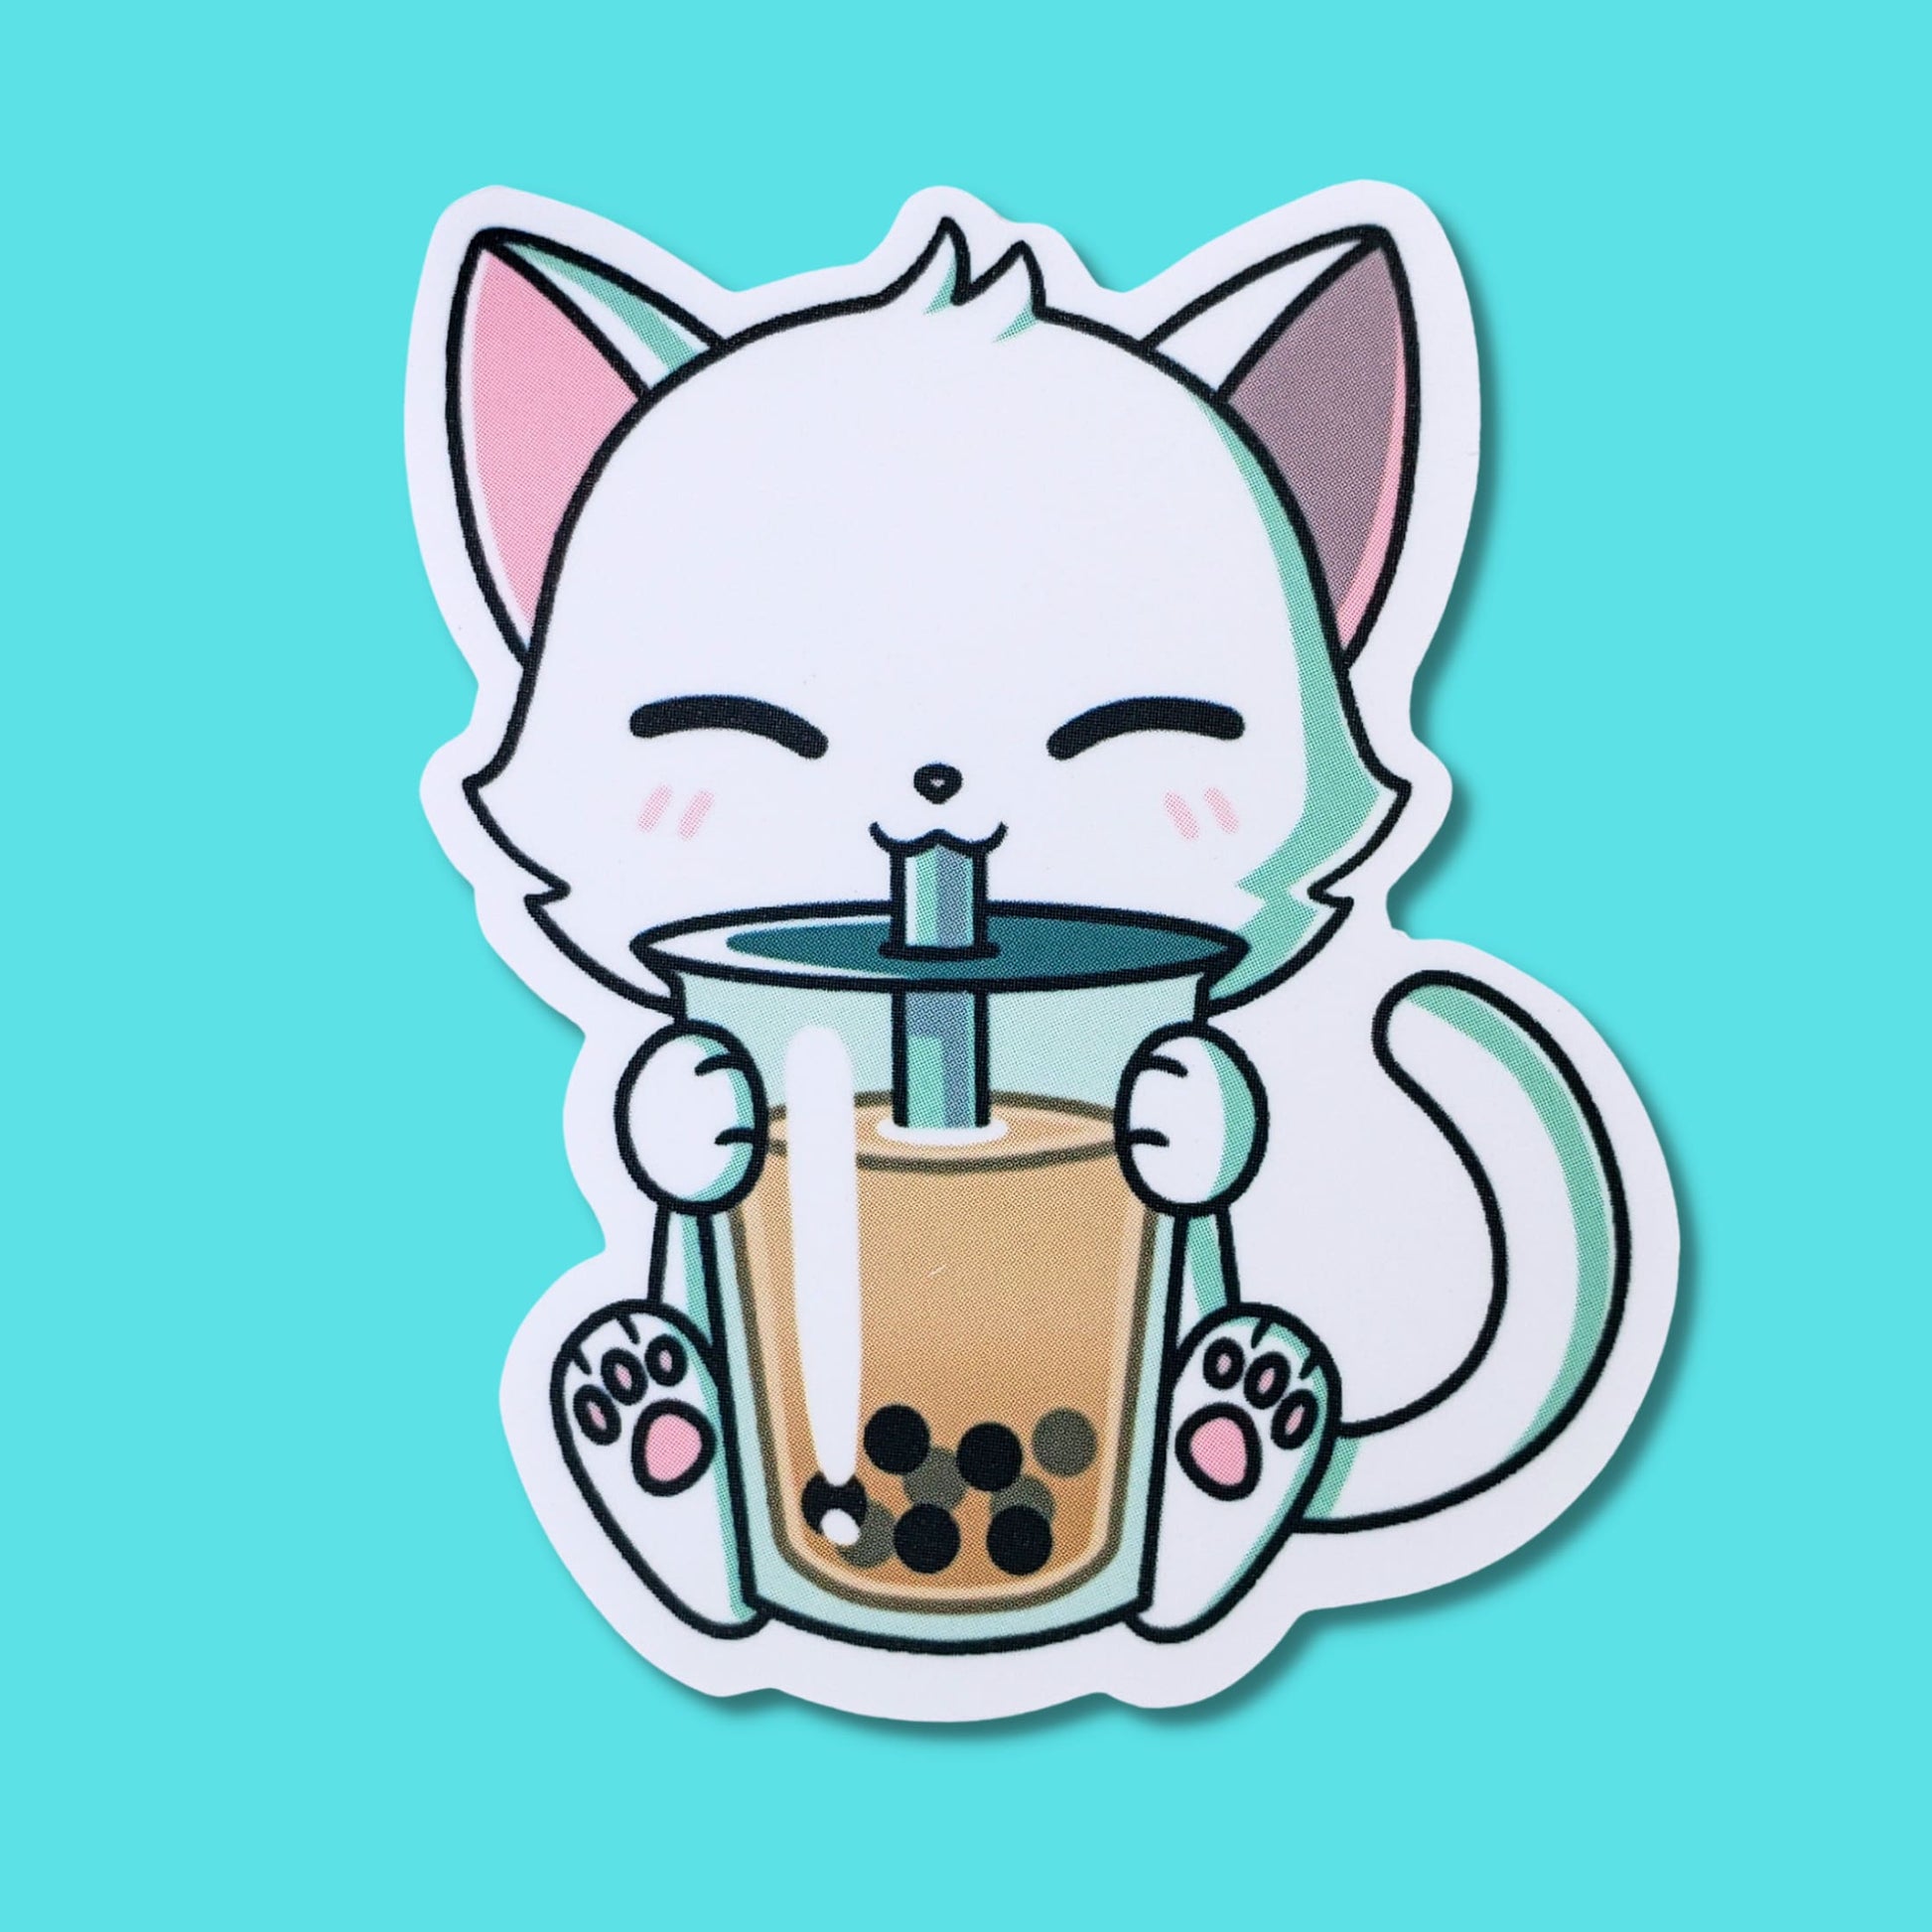 Boba Cat Enamel Pin // Black Cat, Kawaii Pin, Cute Bubble Tea